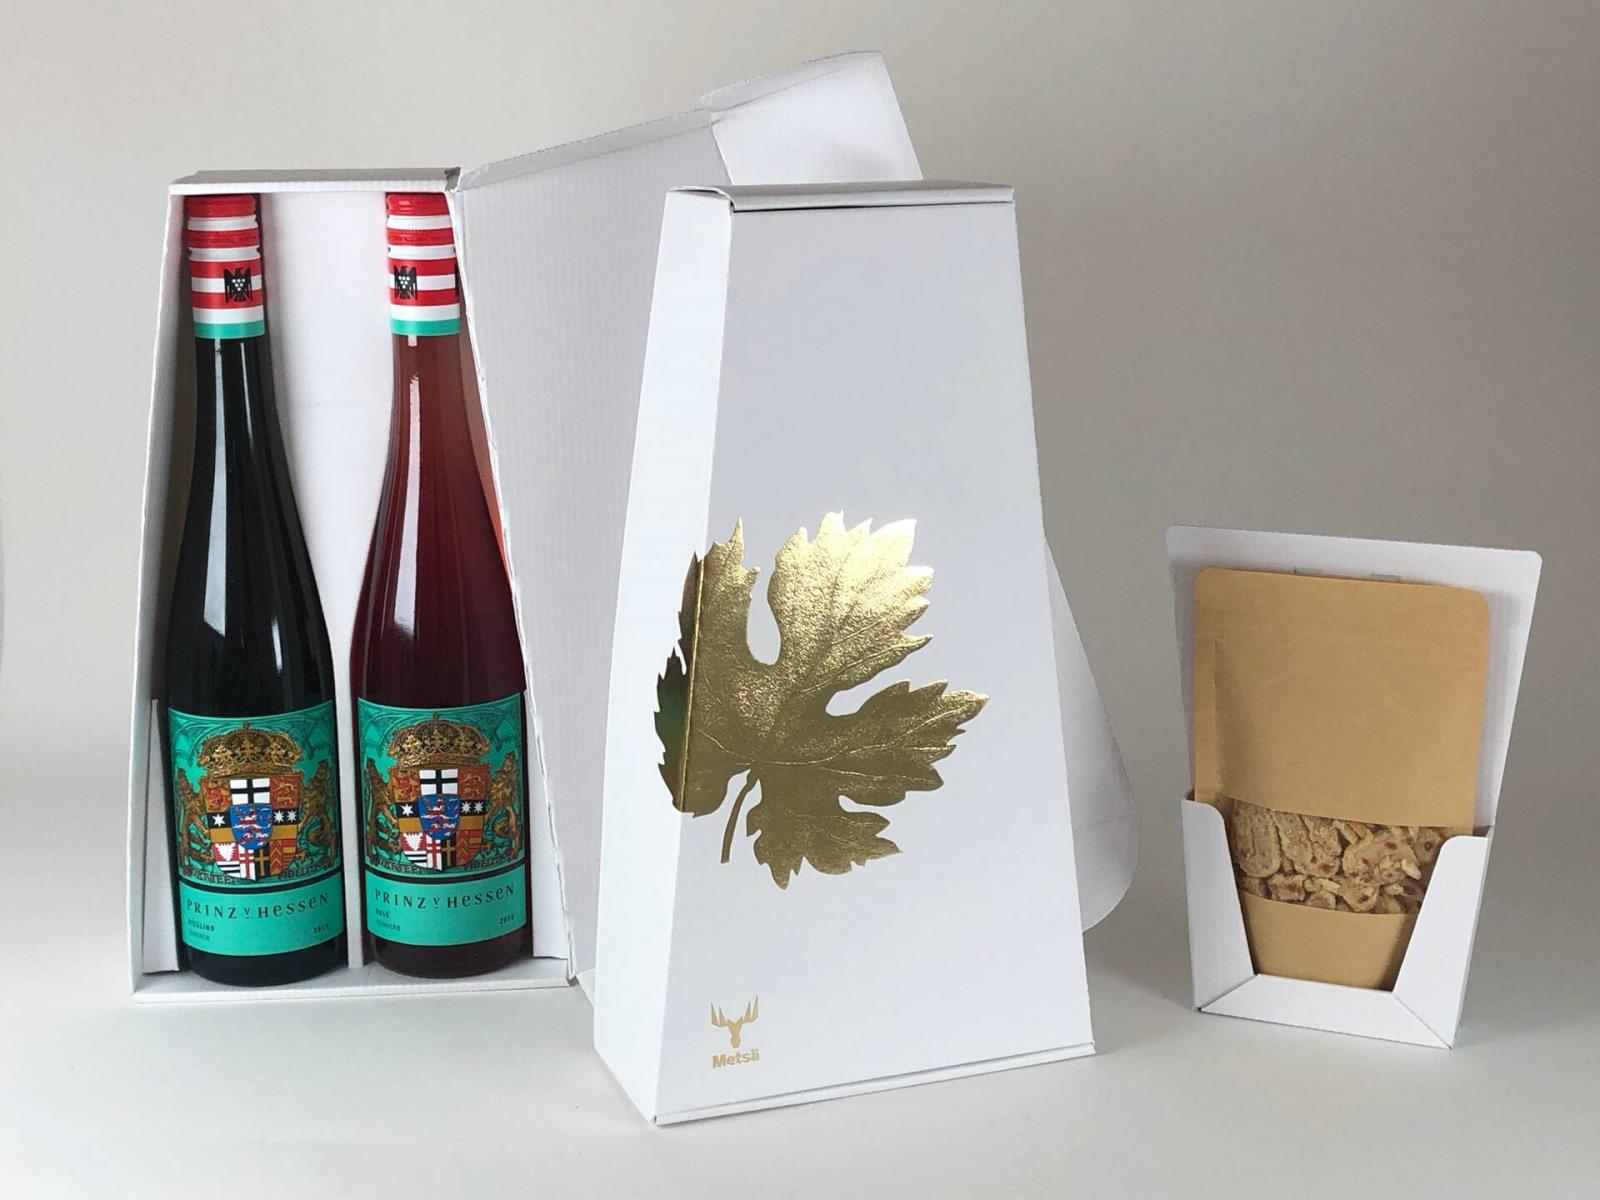 Prinz von Hessen wine packaging__web.jpg